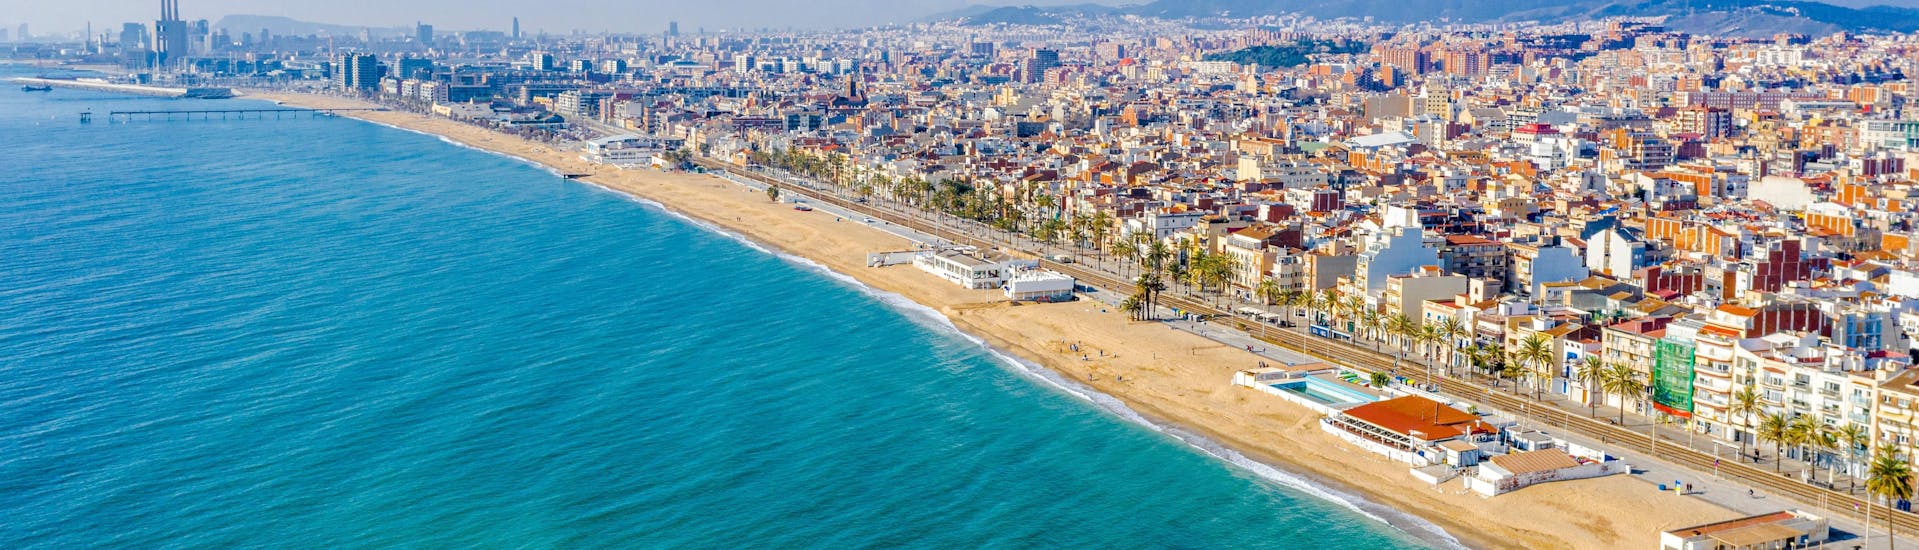 Playa de Badalona en Barcelona durante la temporada de verano.